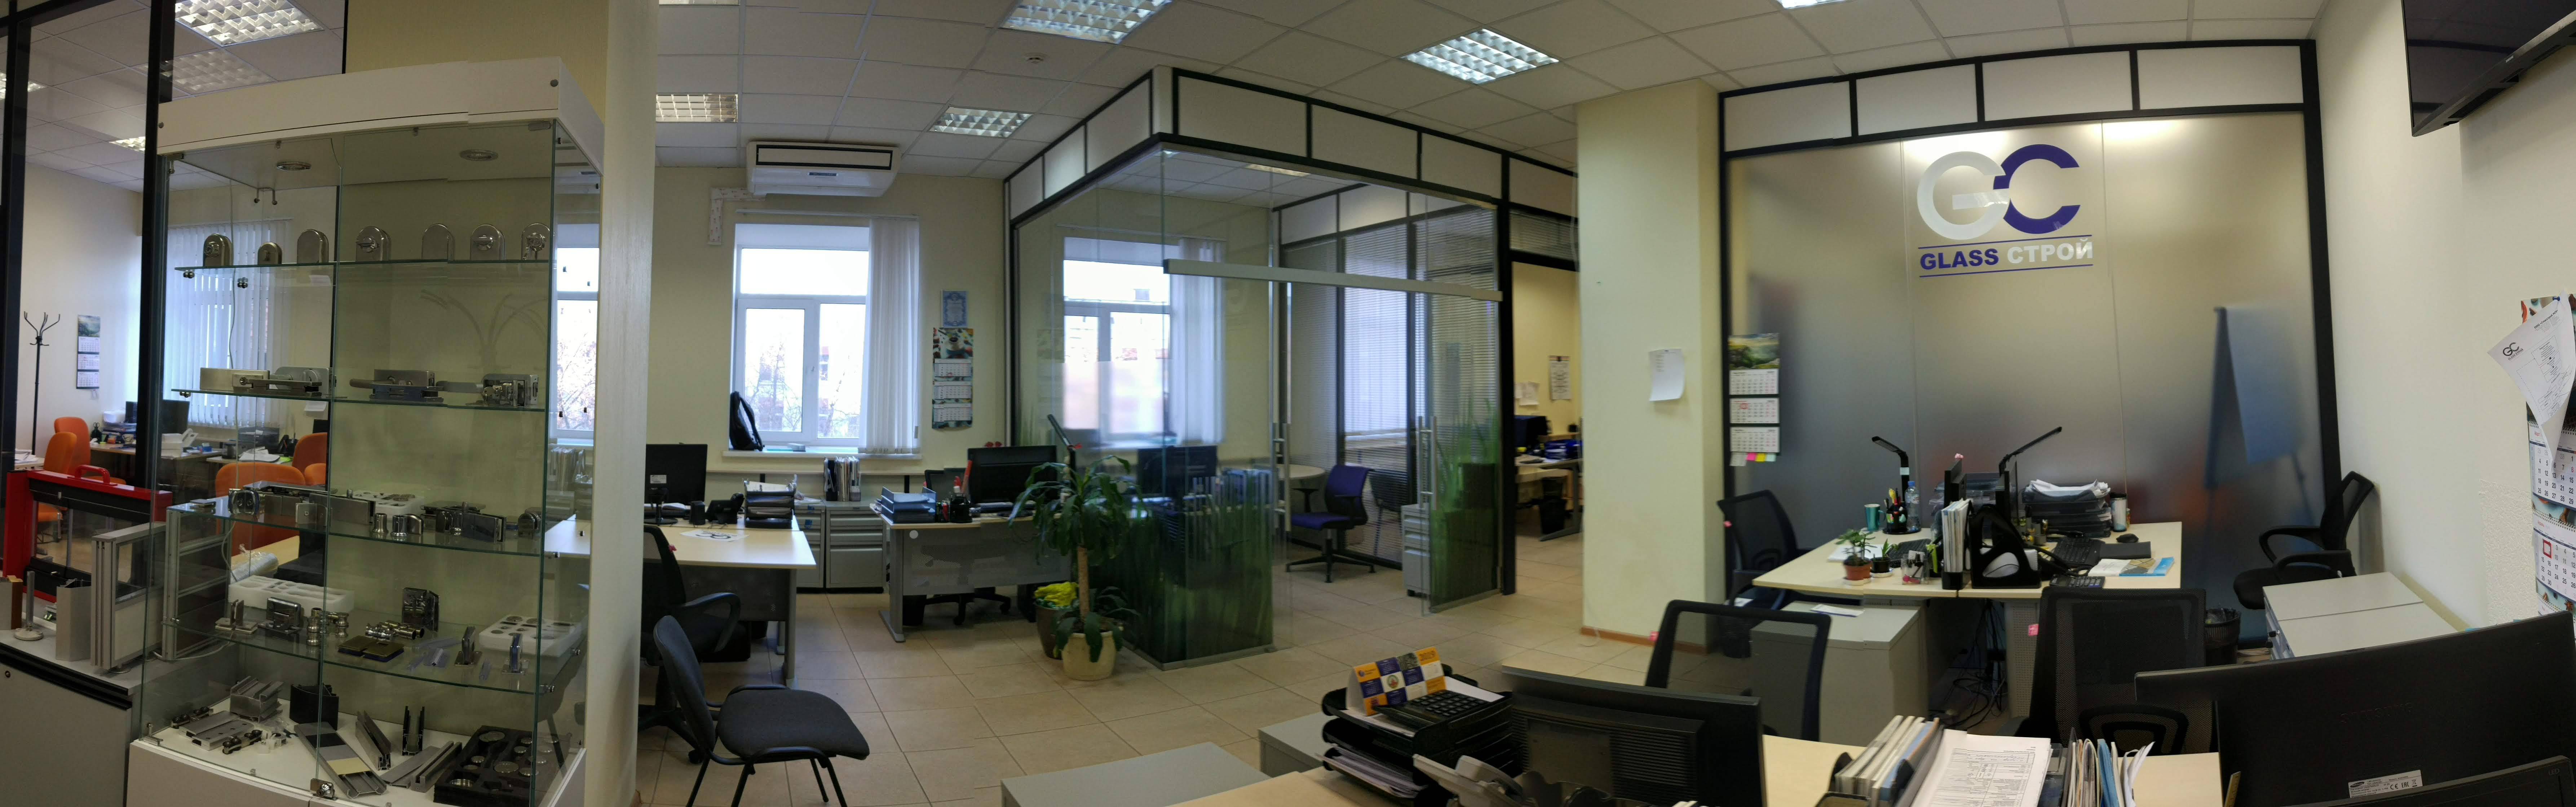 Панорама офиса Гласстрой